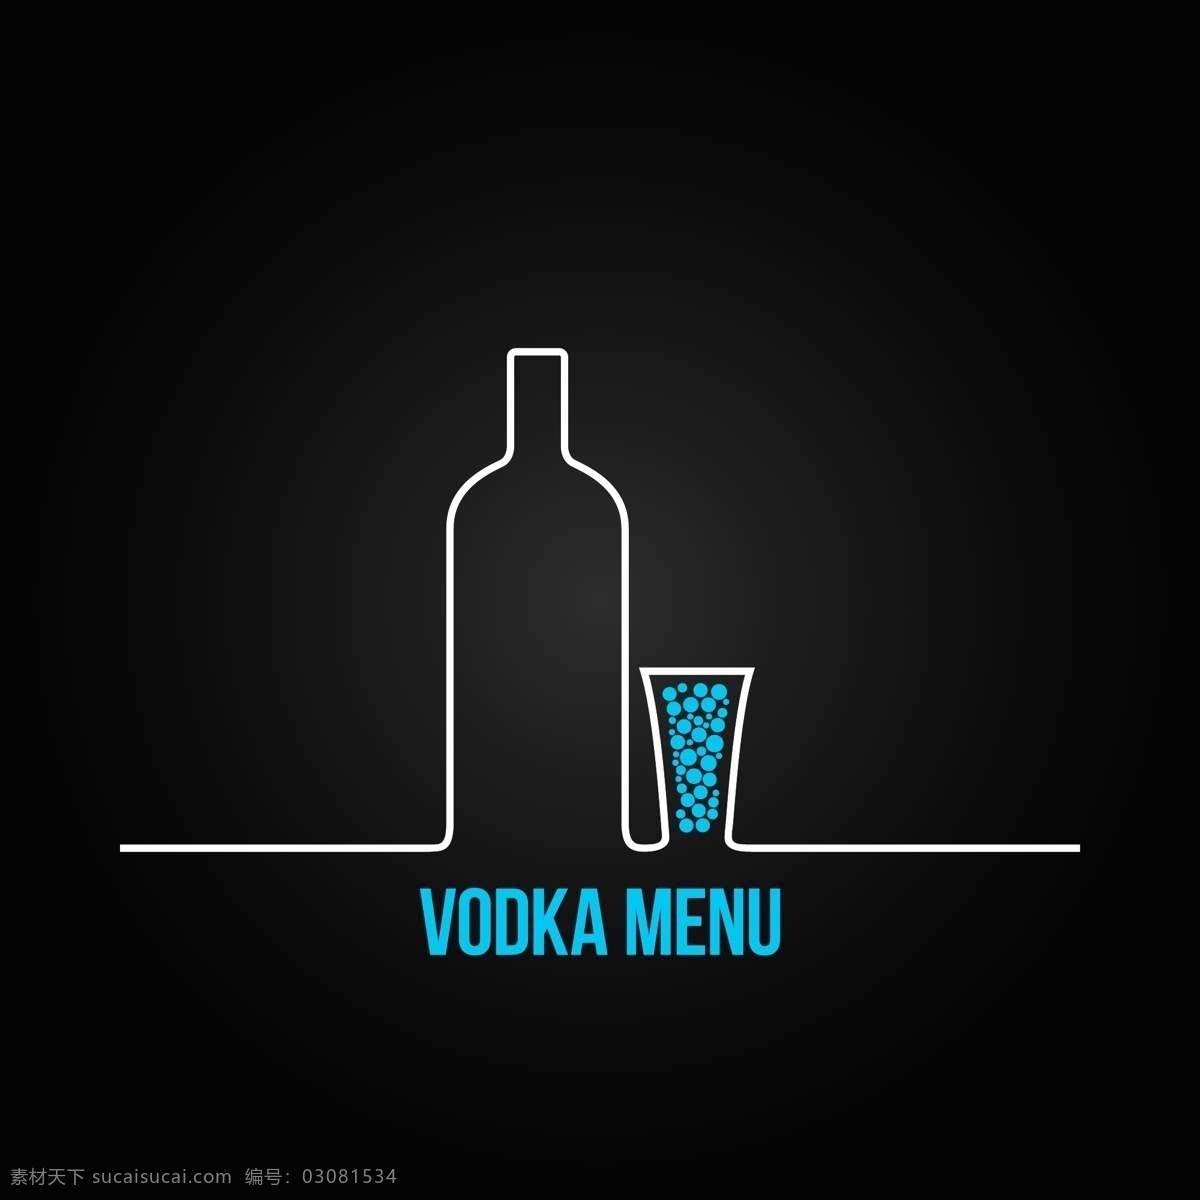 伏特加 logo 伏特加酒标志 酒瓶 酒杯 酒logo 行业标志 标志图标 矢量素材 黑色